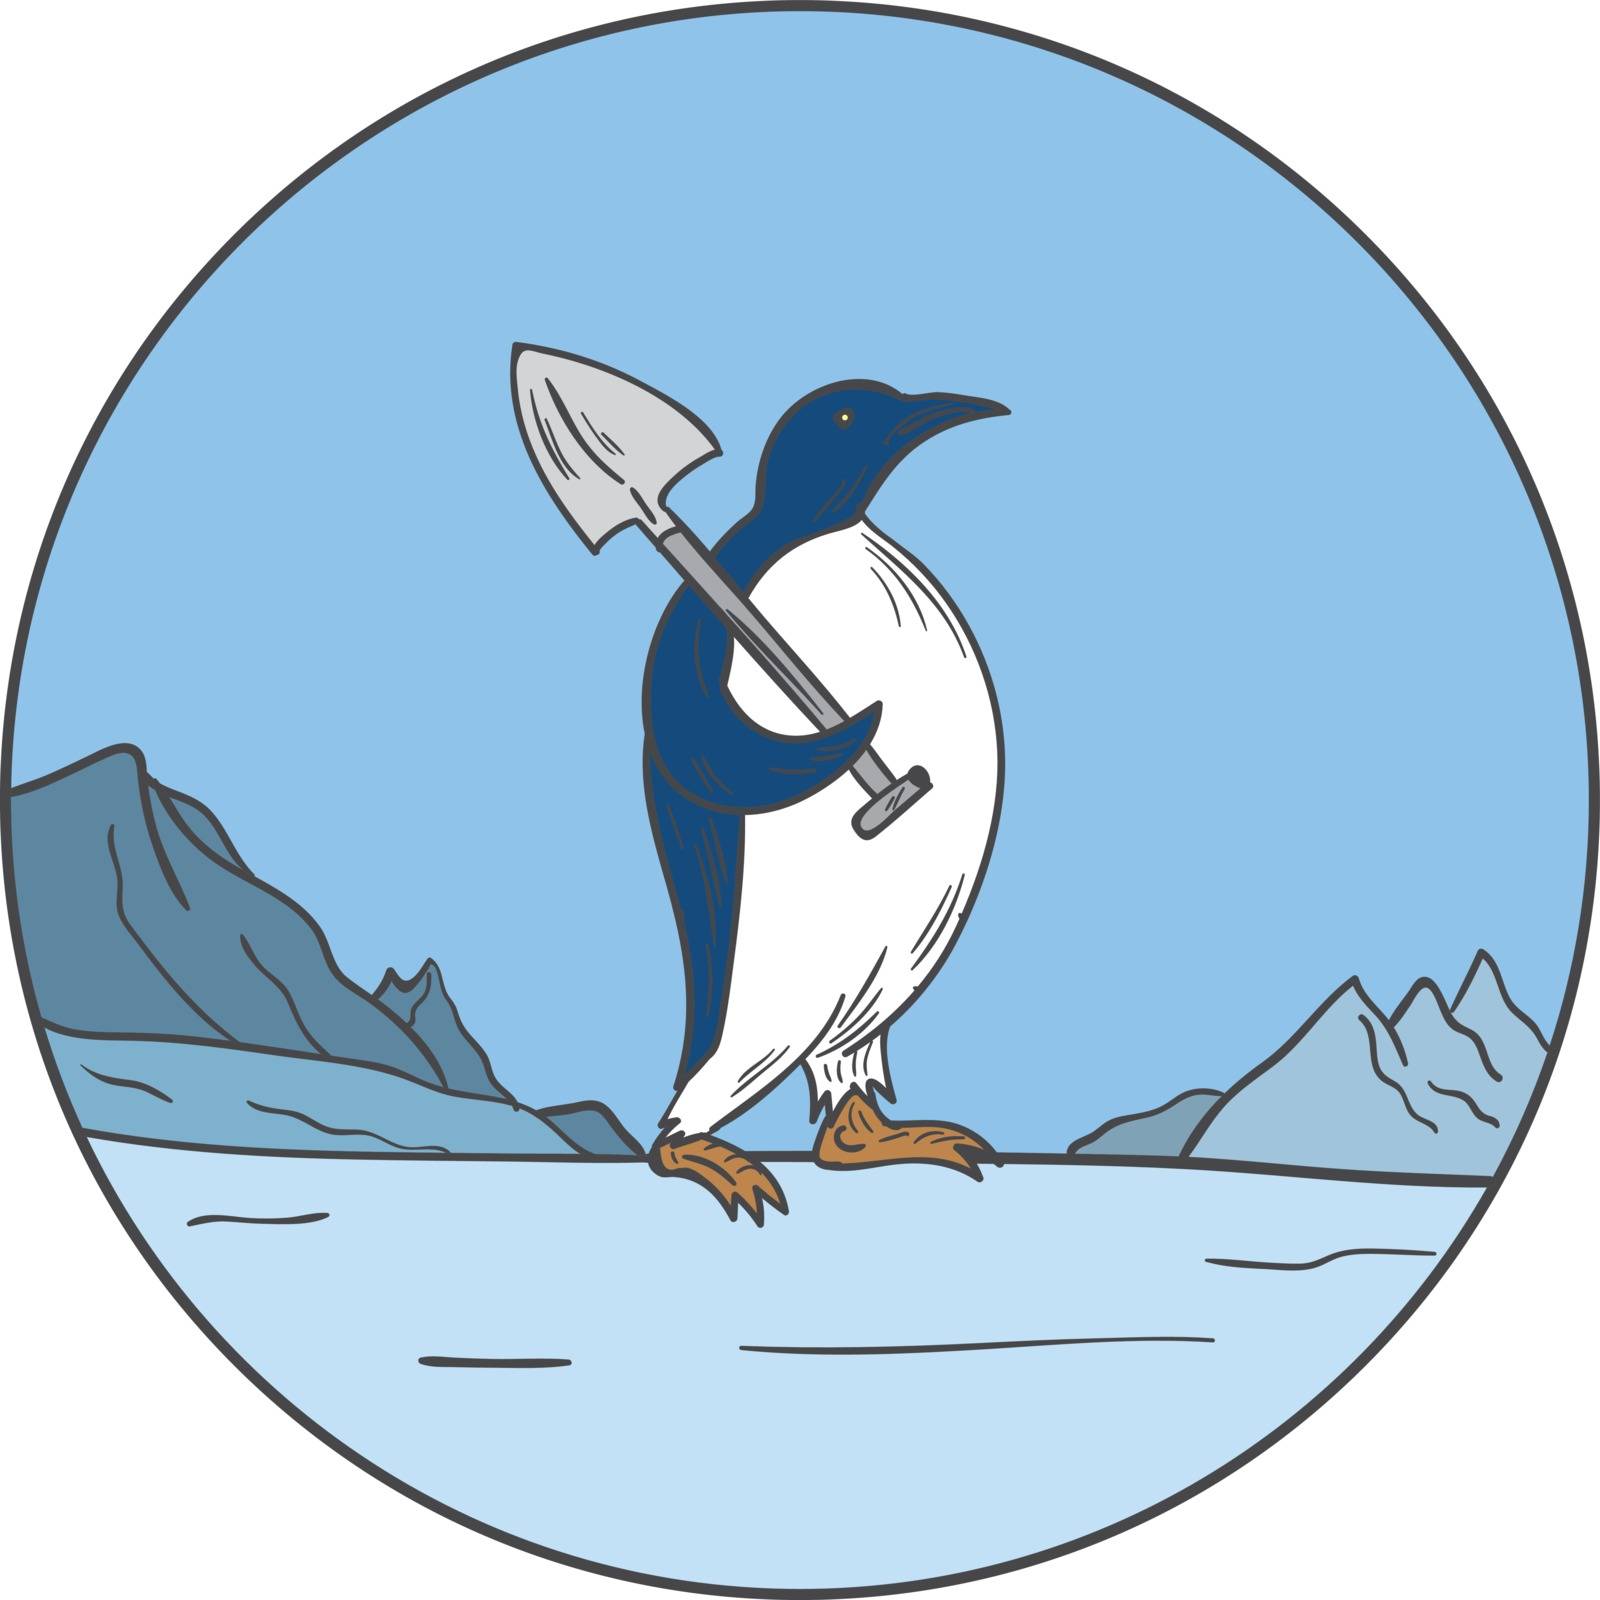 Emperor Penguin Shovel Antartica Circle Mono Line by patrimonio